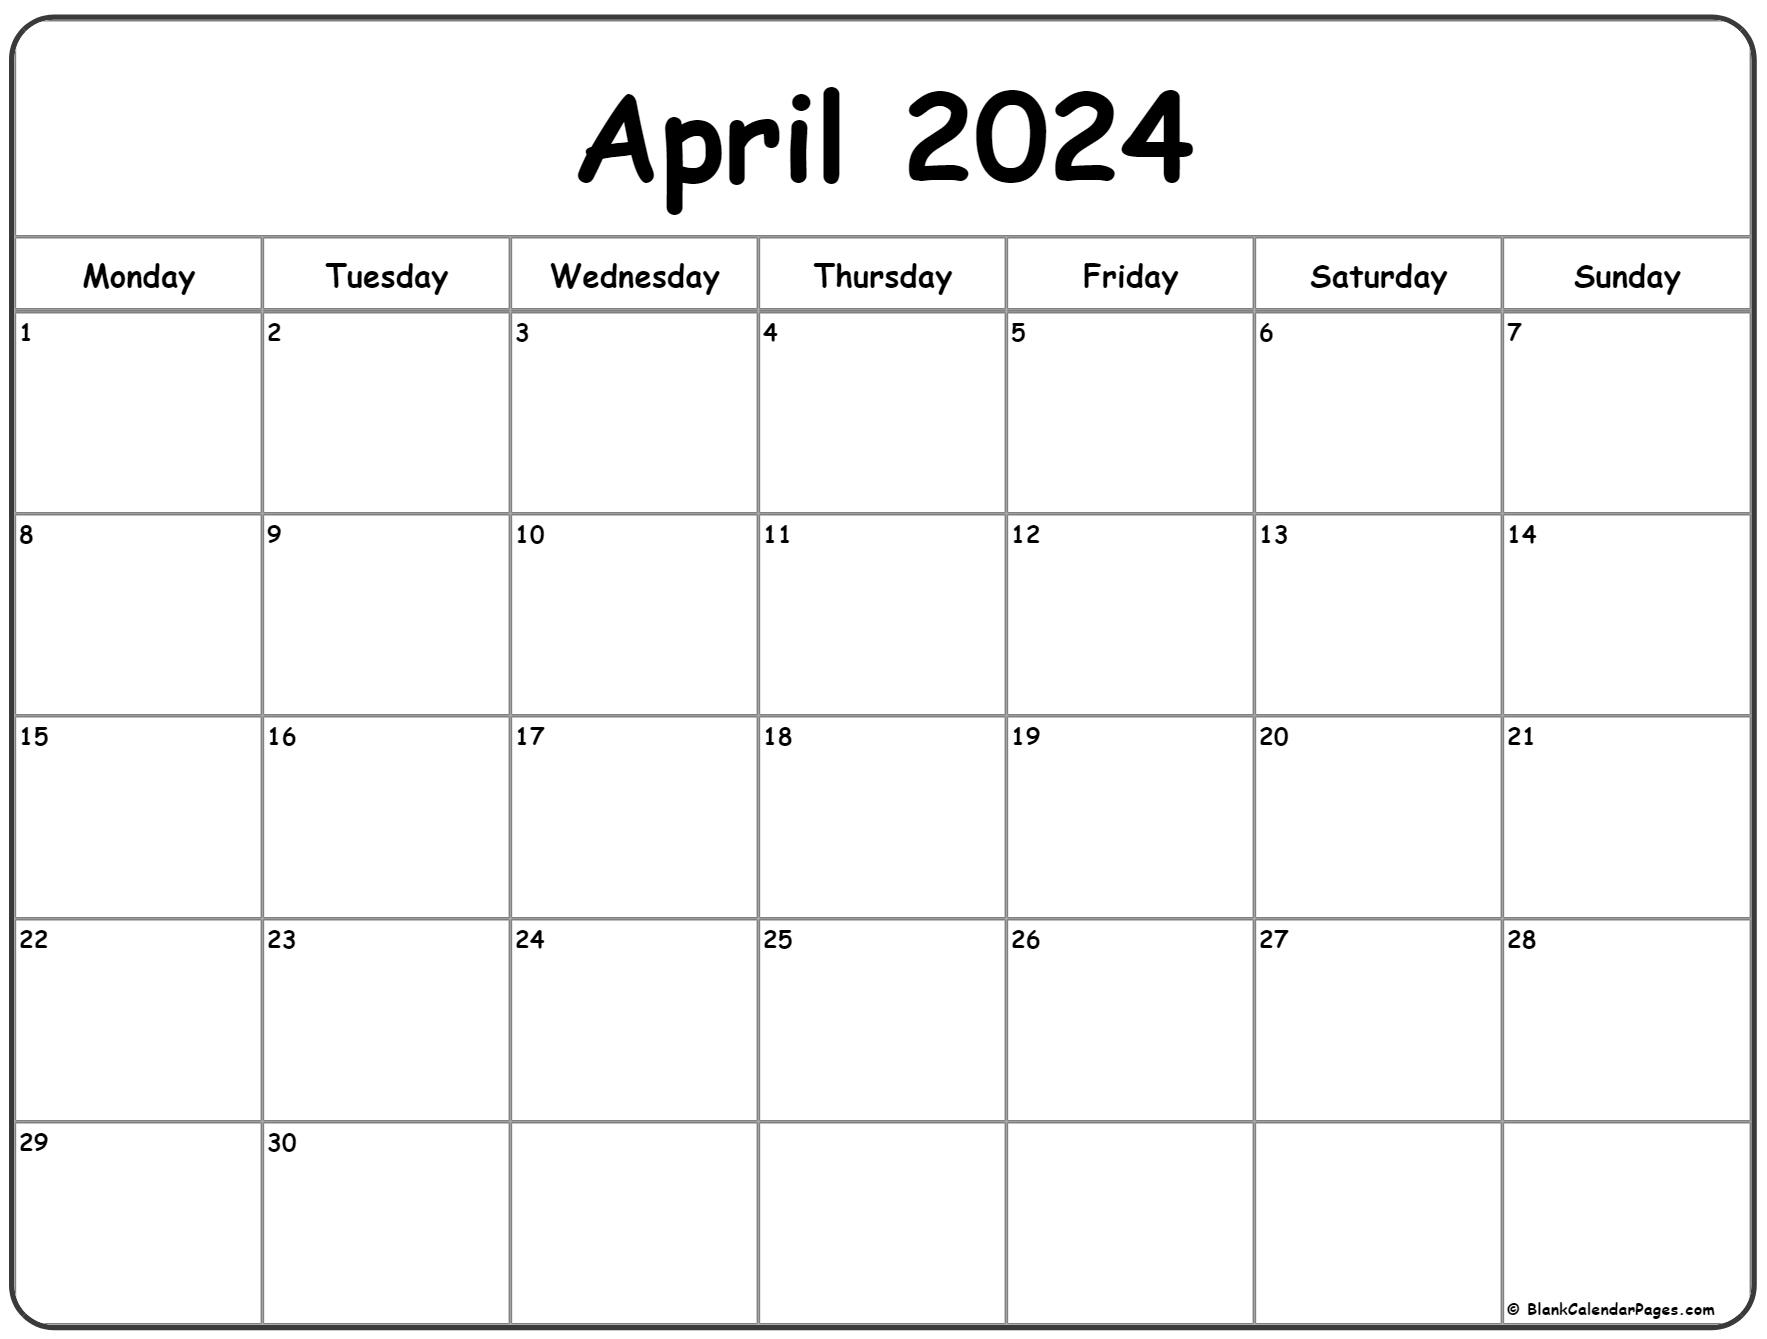 April 2024 Monday Calendar | Monday To Sunday for April 2024 Printable Calendar